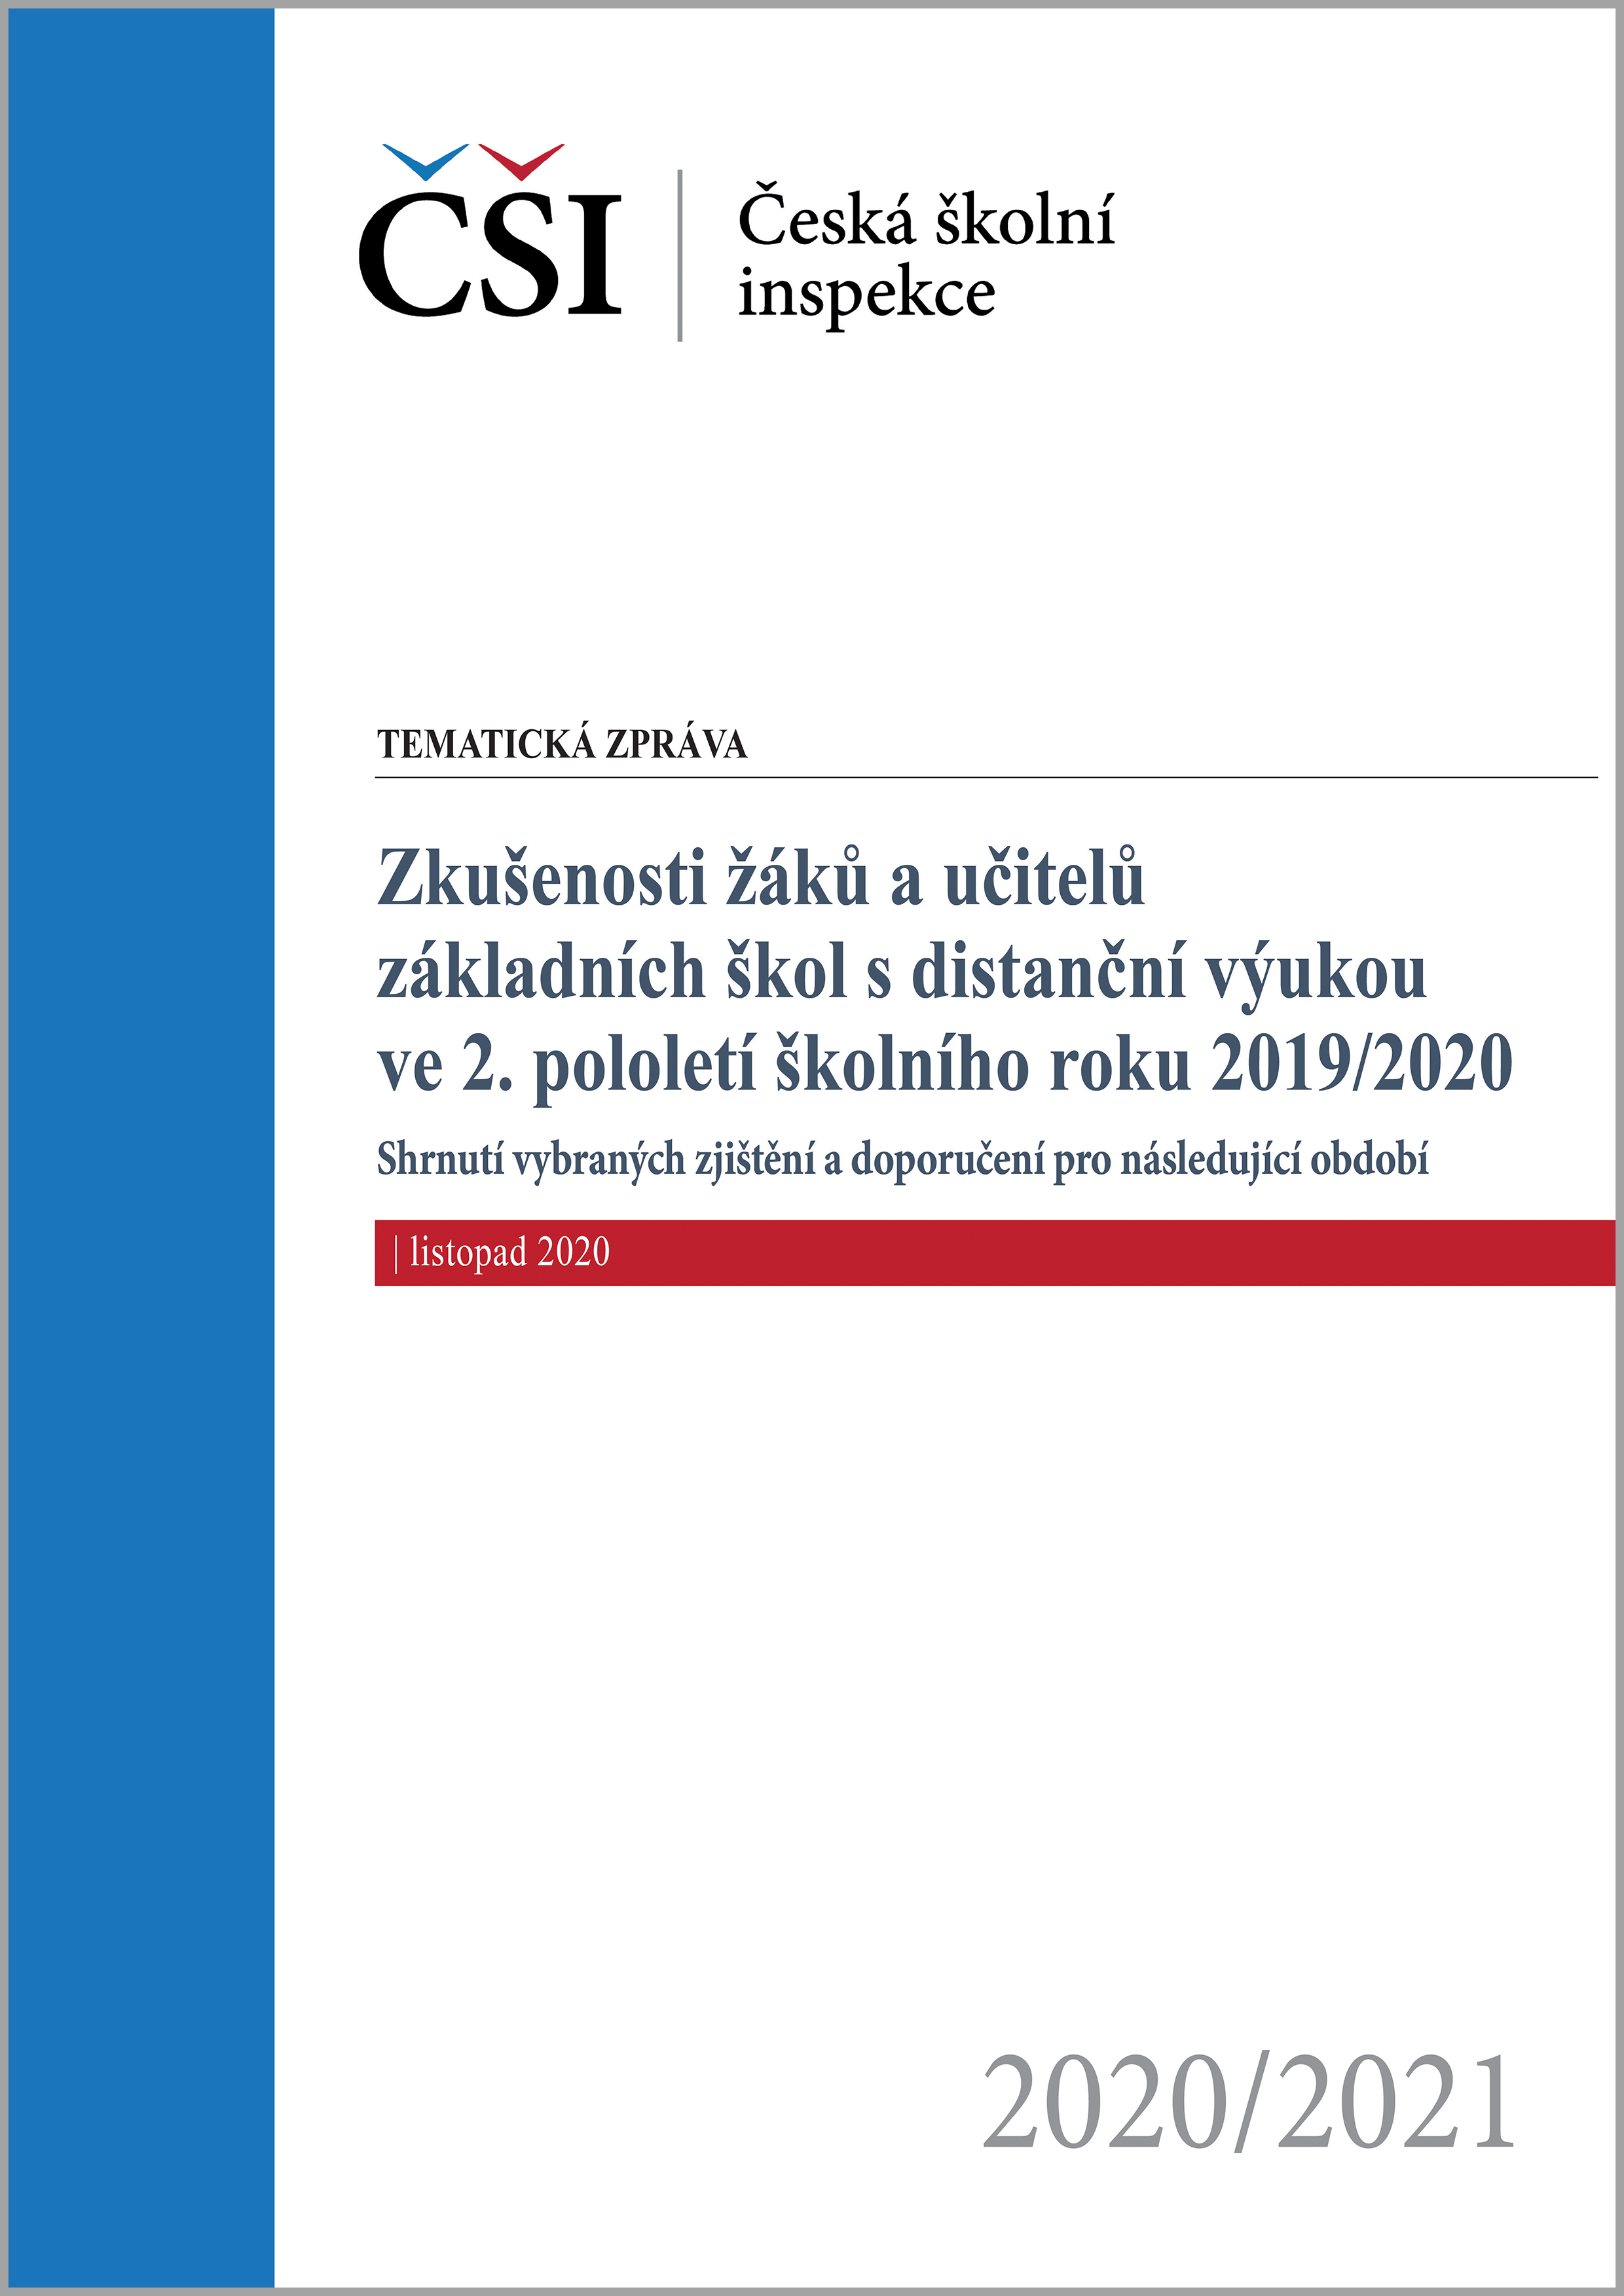 Tematická zpráva - Zkušenosti žáků a učitelů ZŠ s distanční výukou ve 2. pololetí 2019/2020